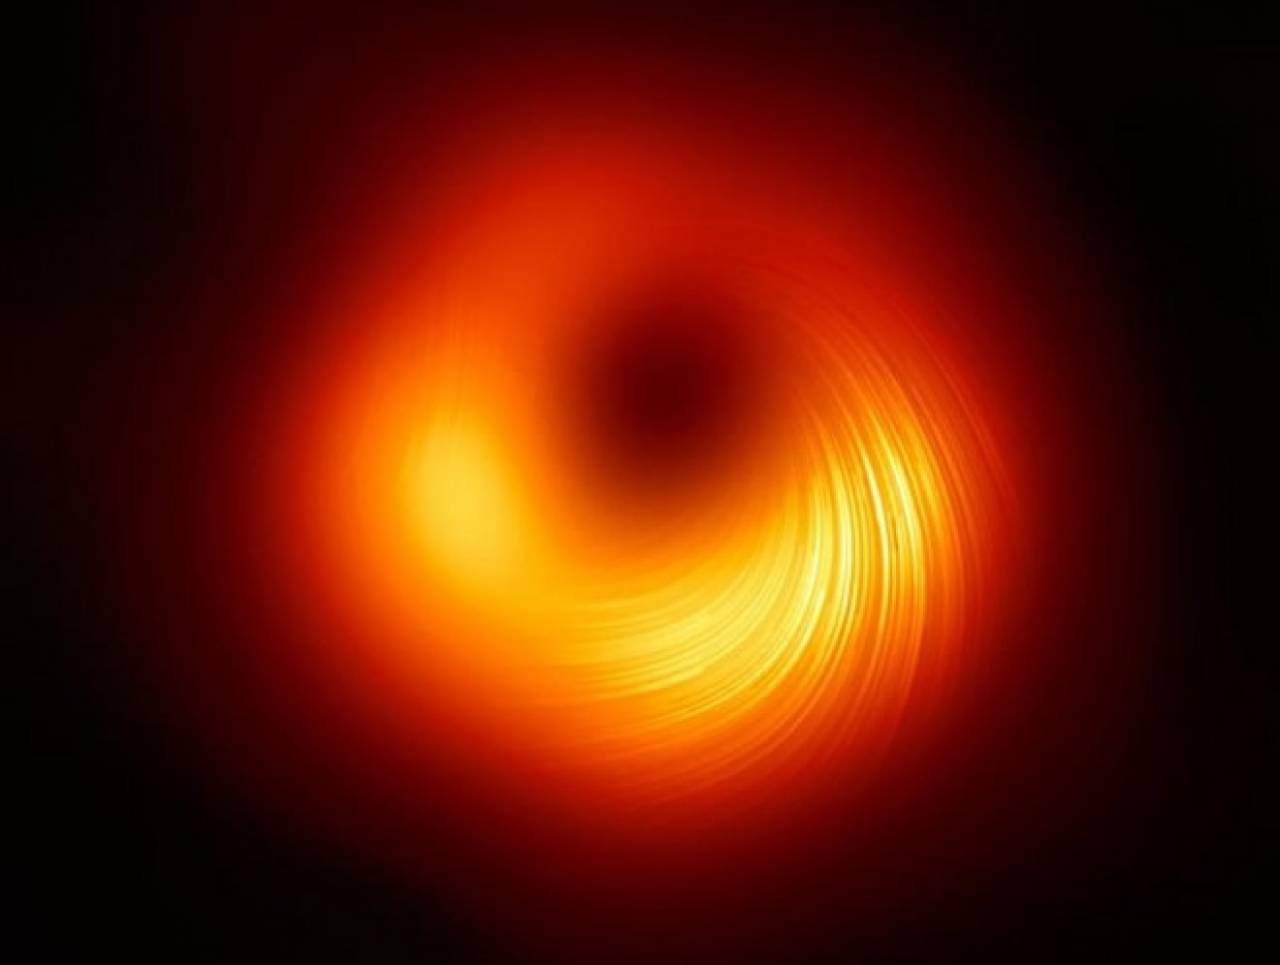 Immagine reale rielaborata che rappresenta l'orizzonte degli eventi, il buco nero, invisibile al centro